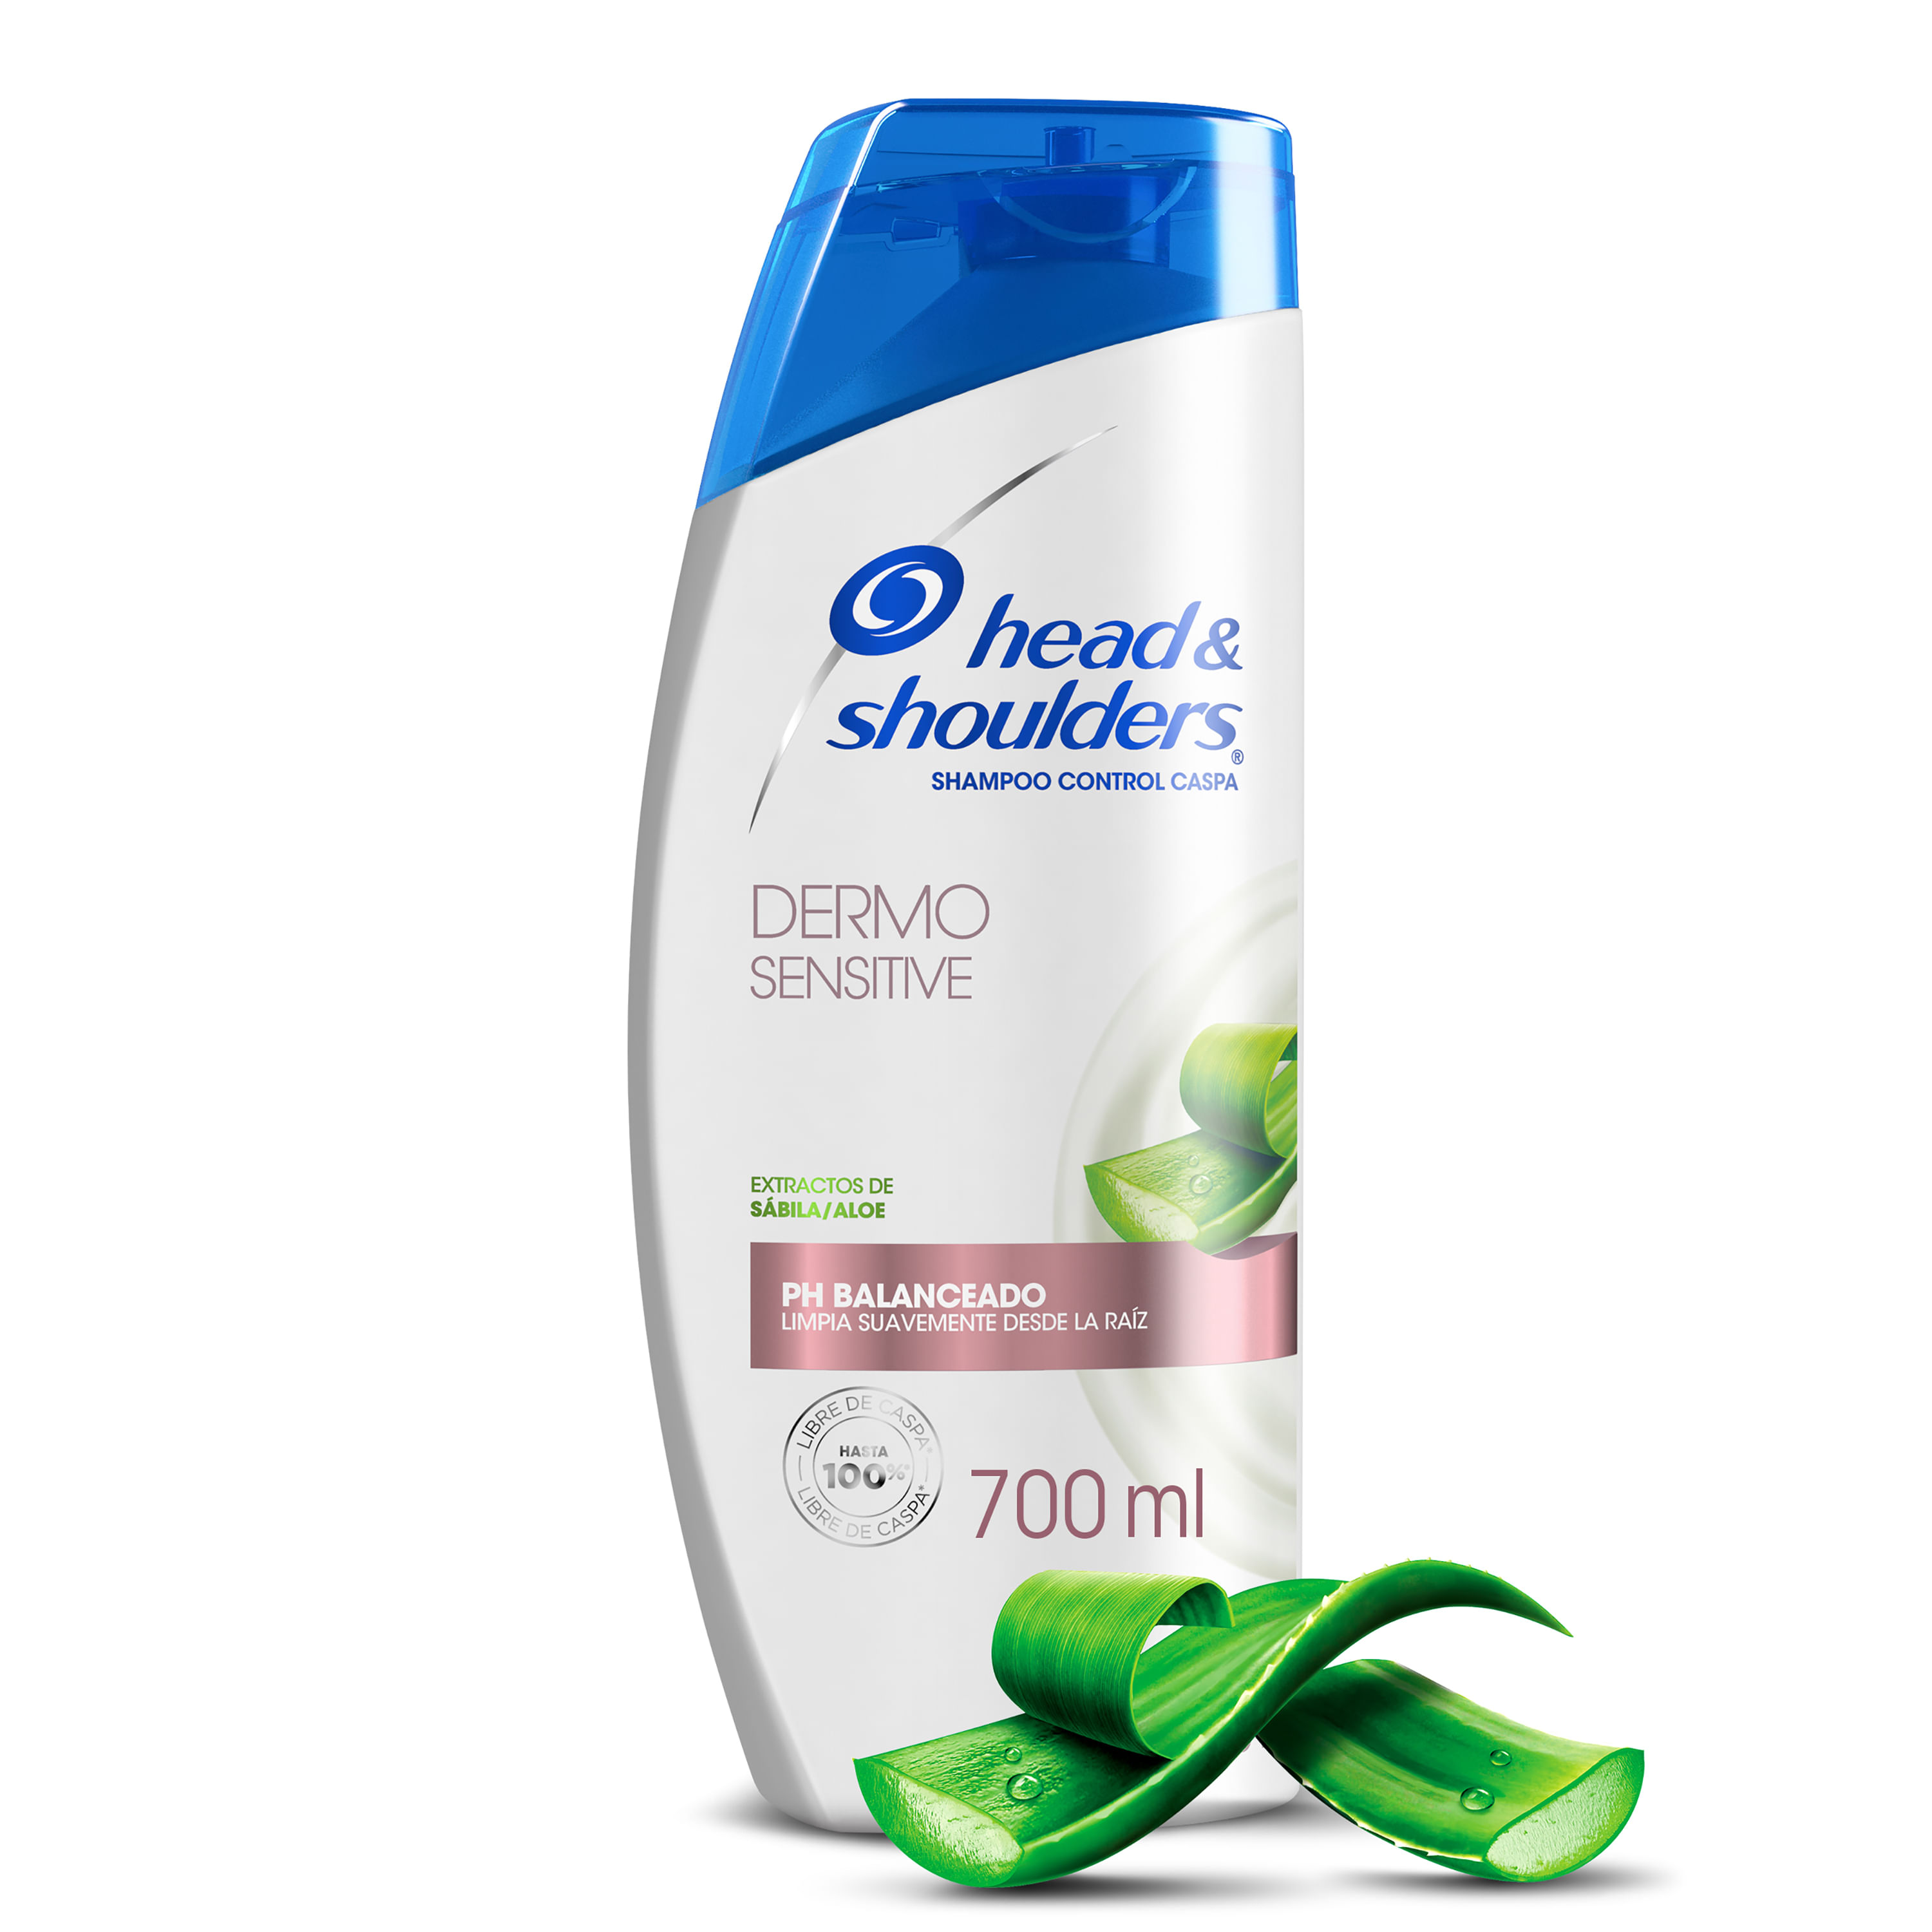 Shampoo Herbal Essences con Extractos de Coco 700ml